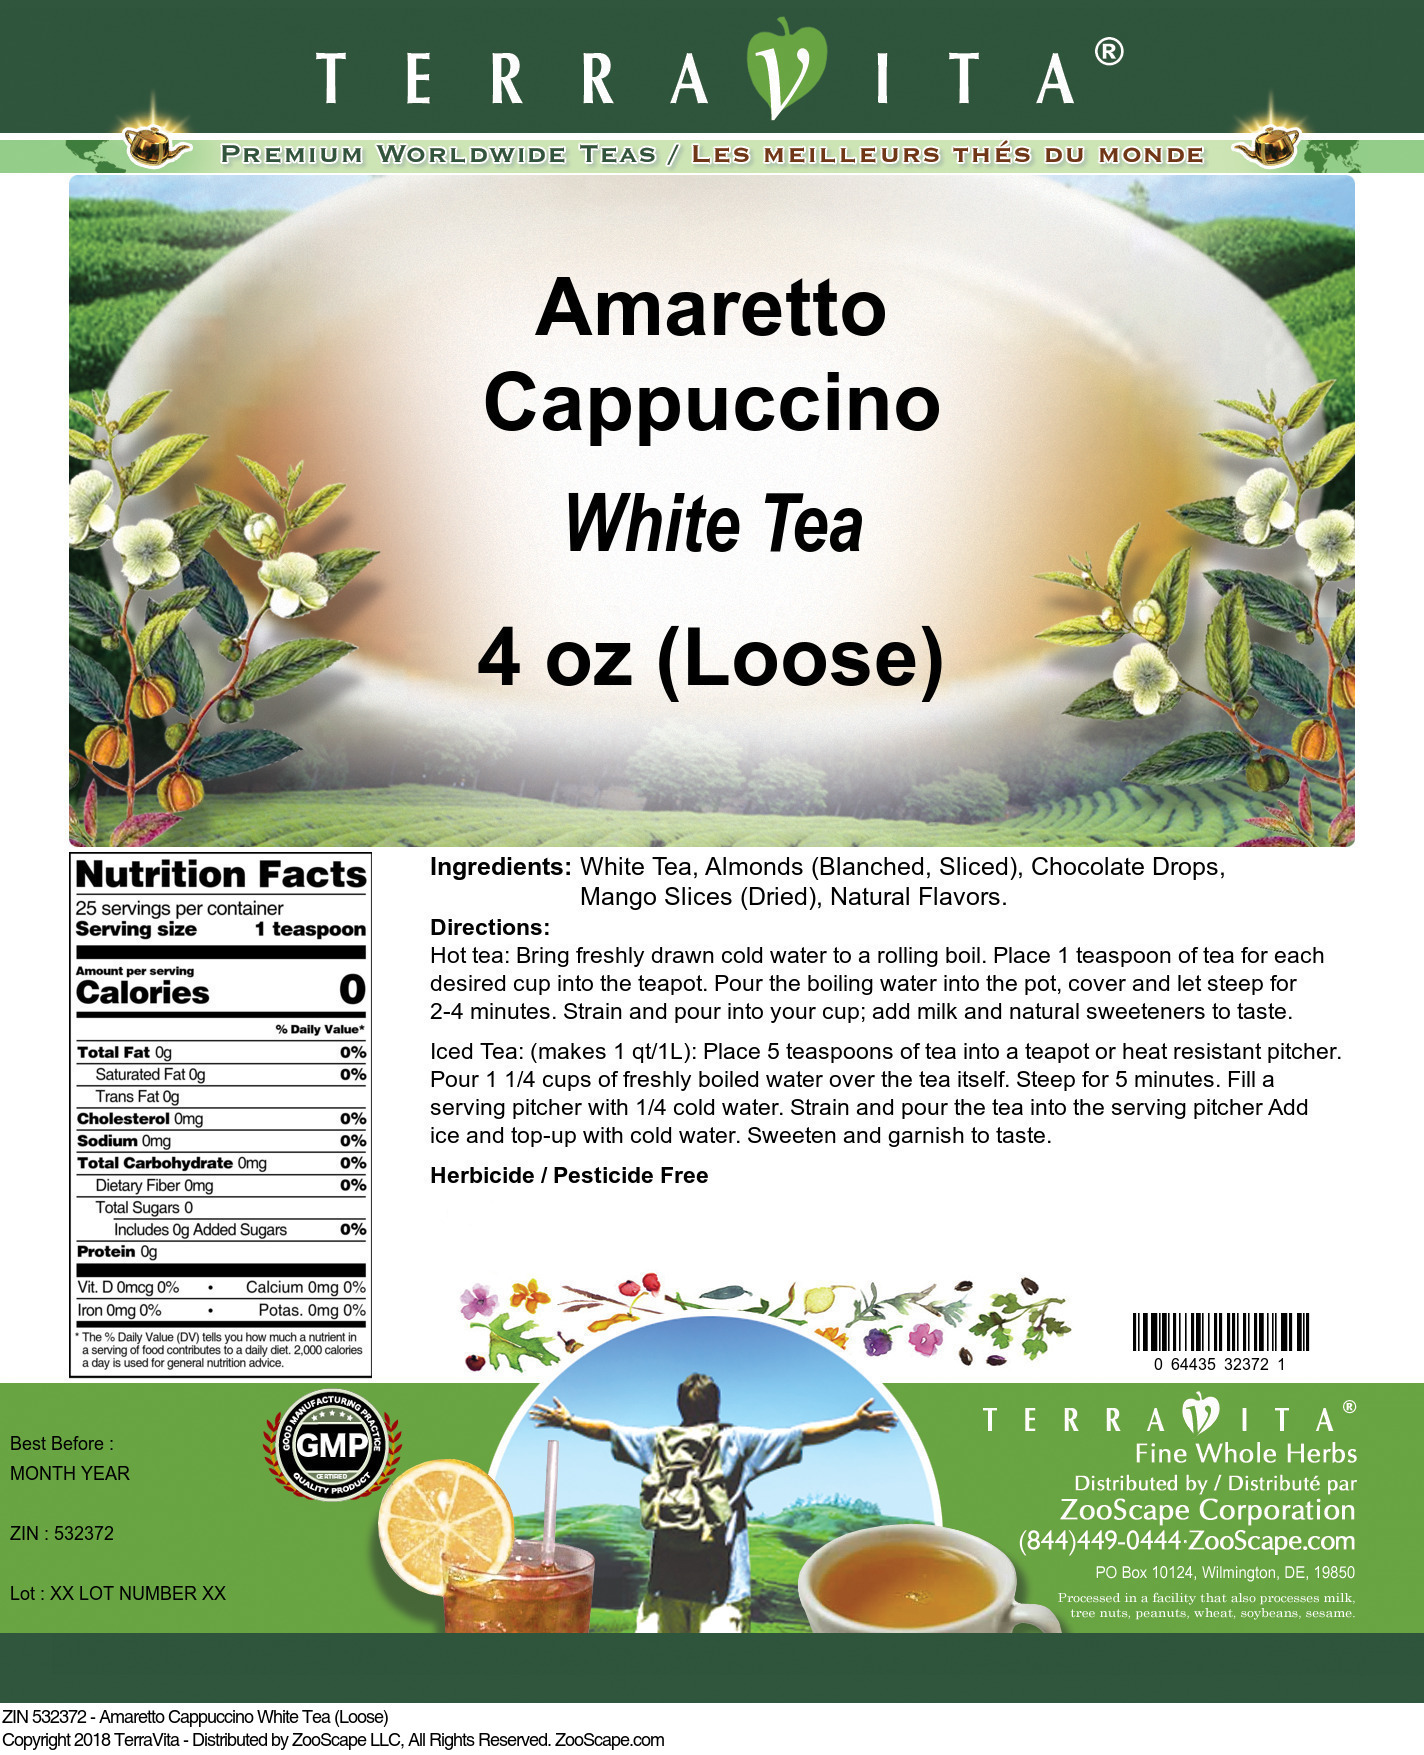 Amaretto Cappuccino White Tea (Loose) - Label